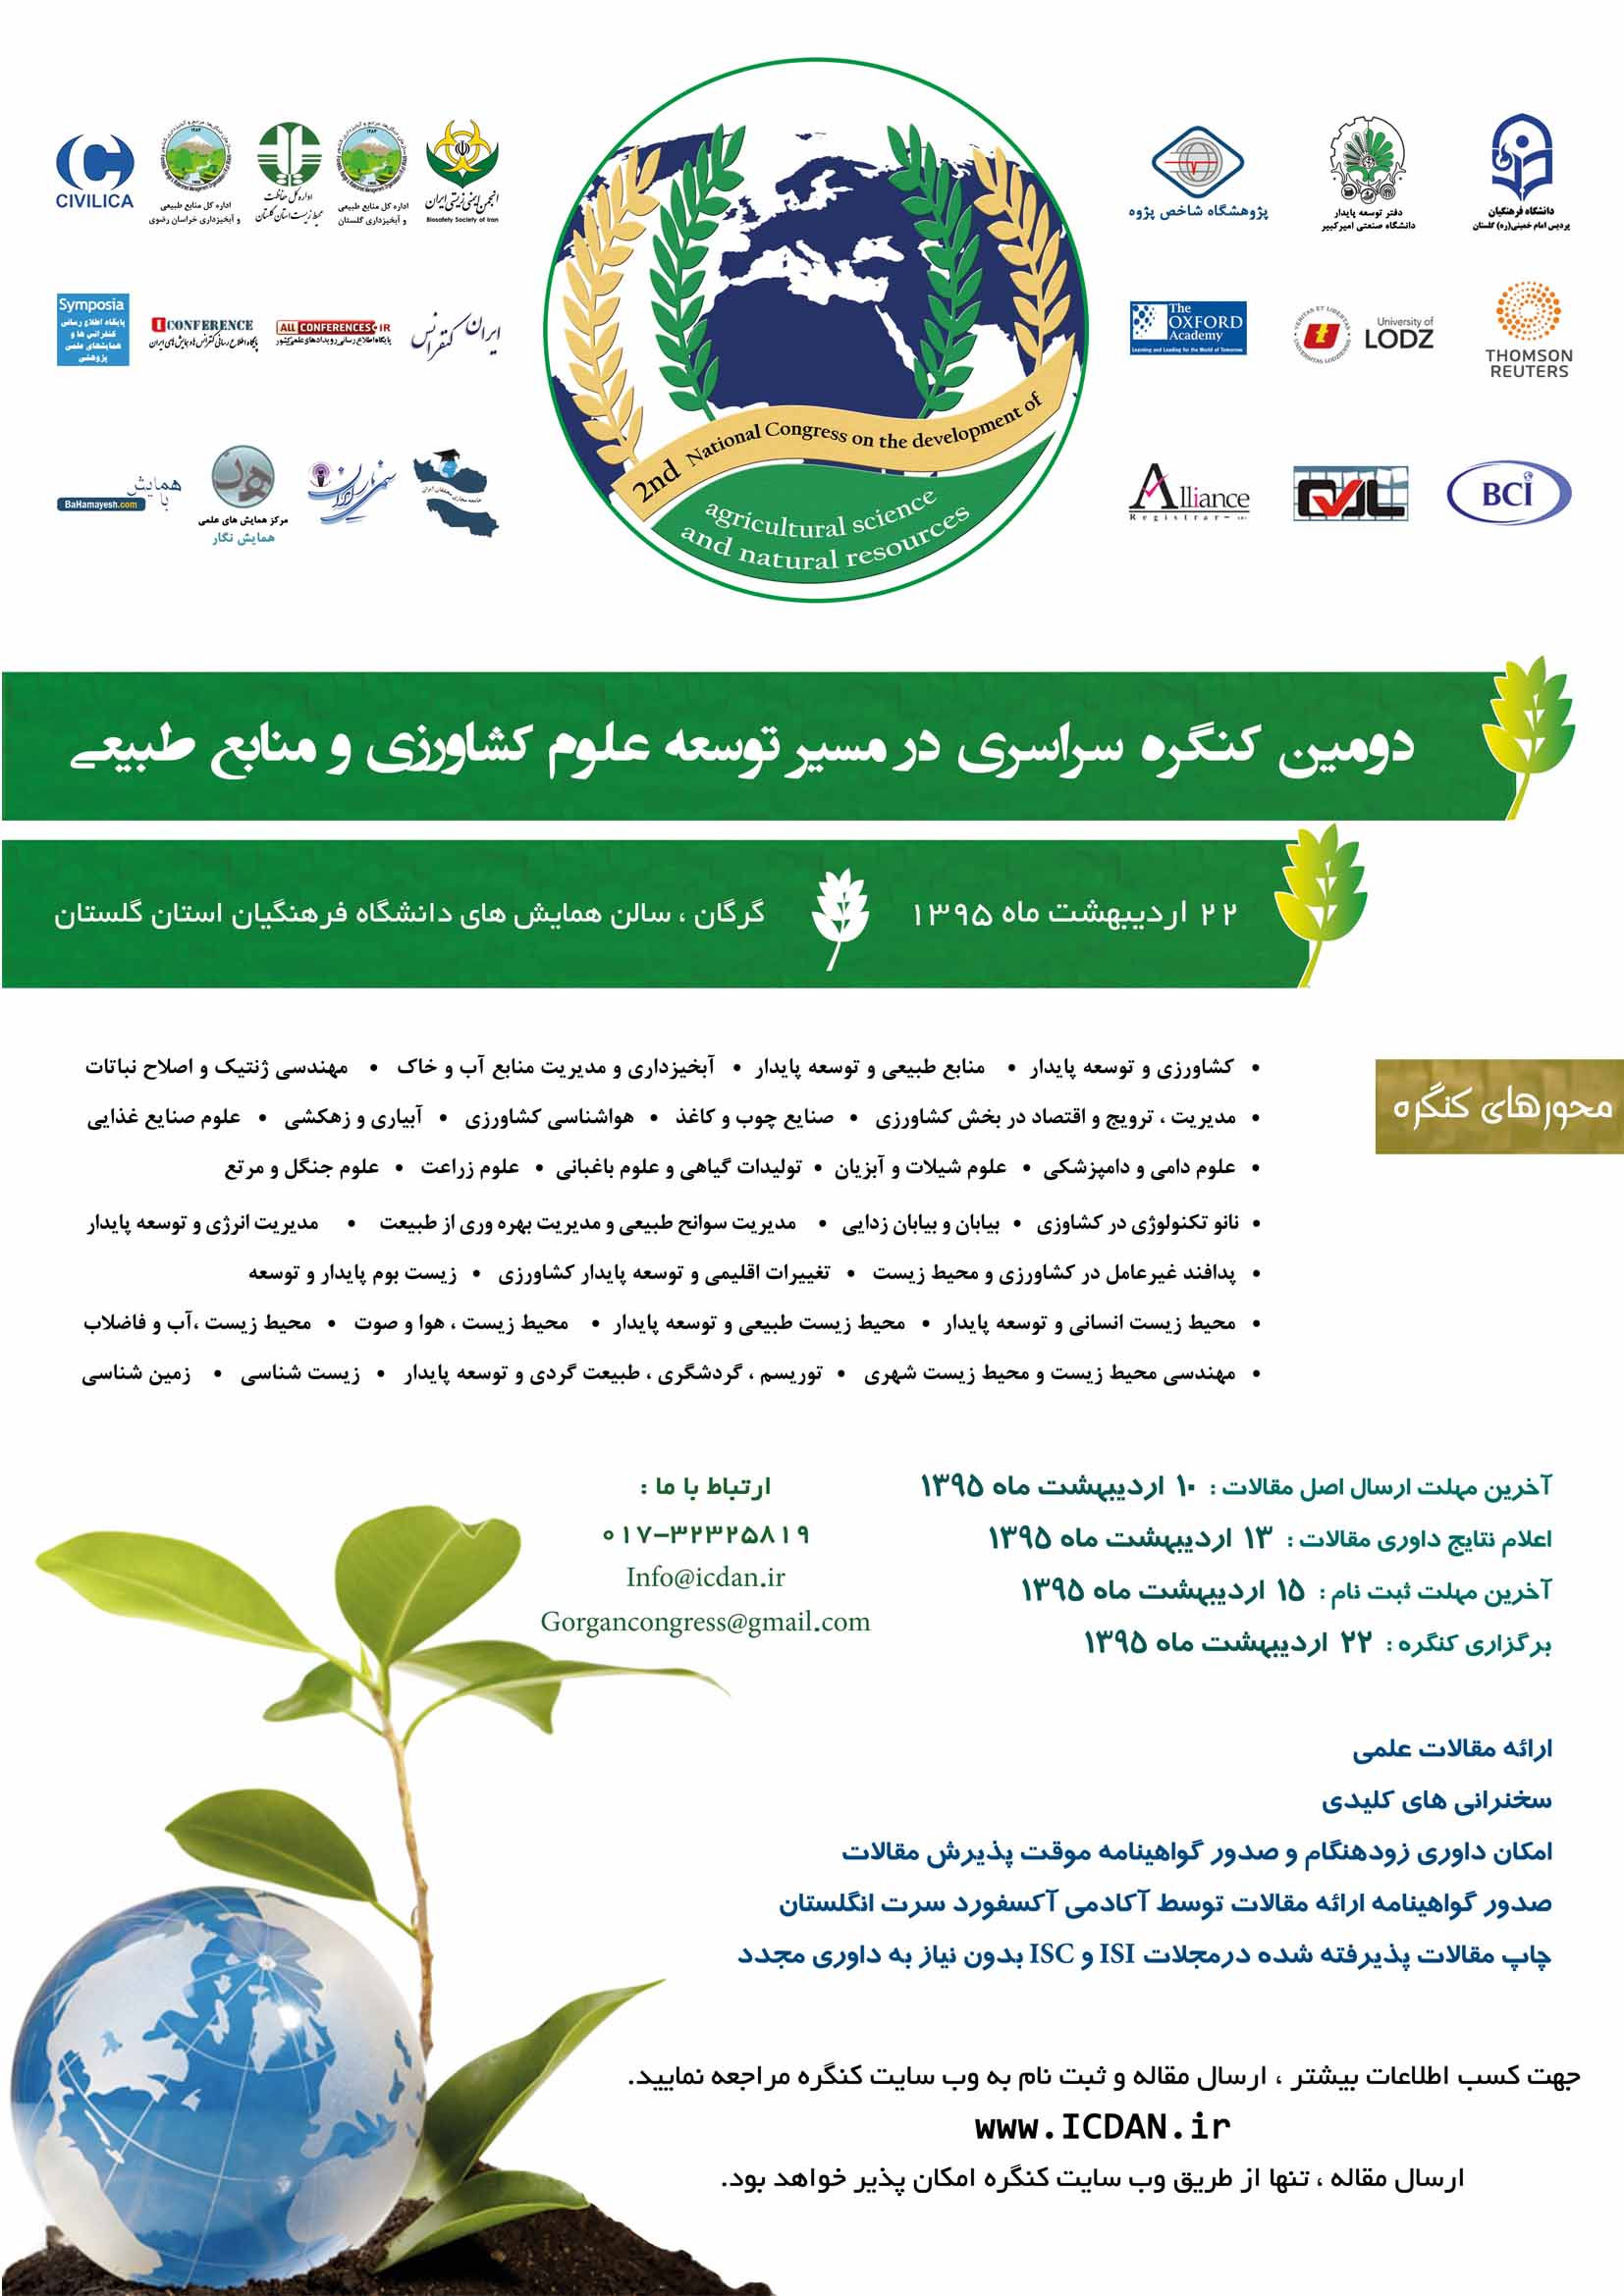 پوستر دومین کنگره بین المللی در مسیر توسعه علوم کشاورزی و منابع طبیعی